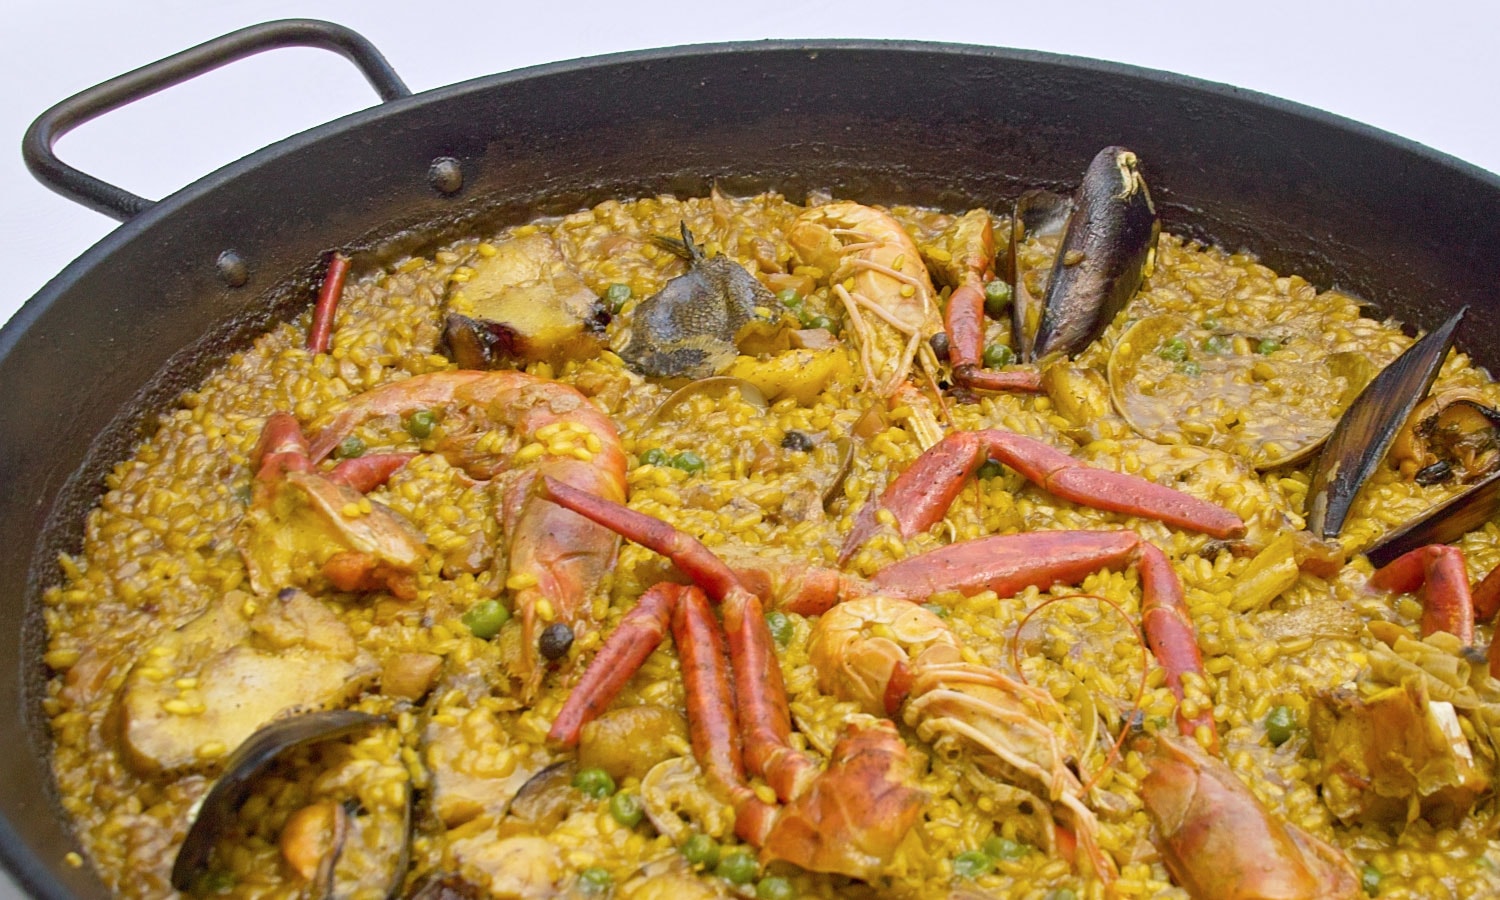 Ibizan seafood stew